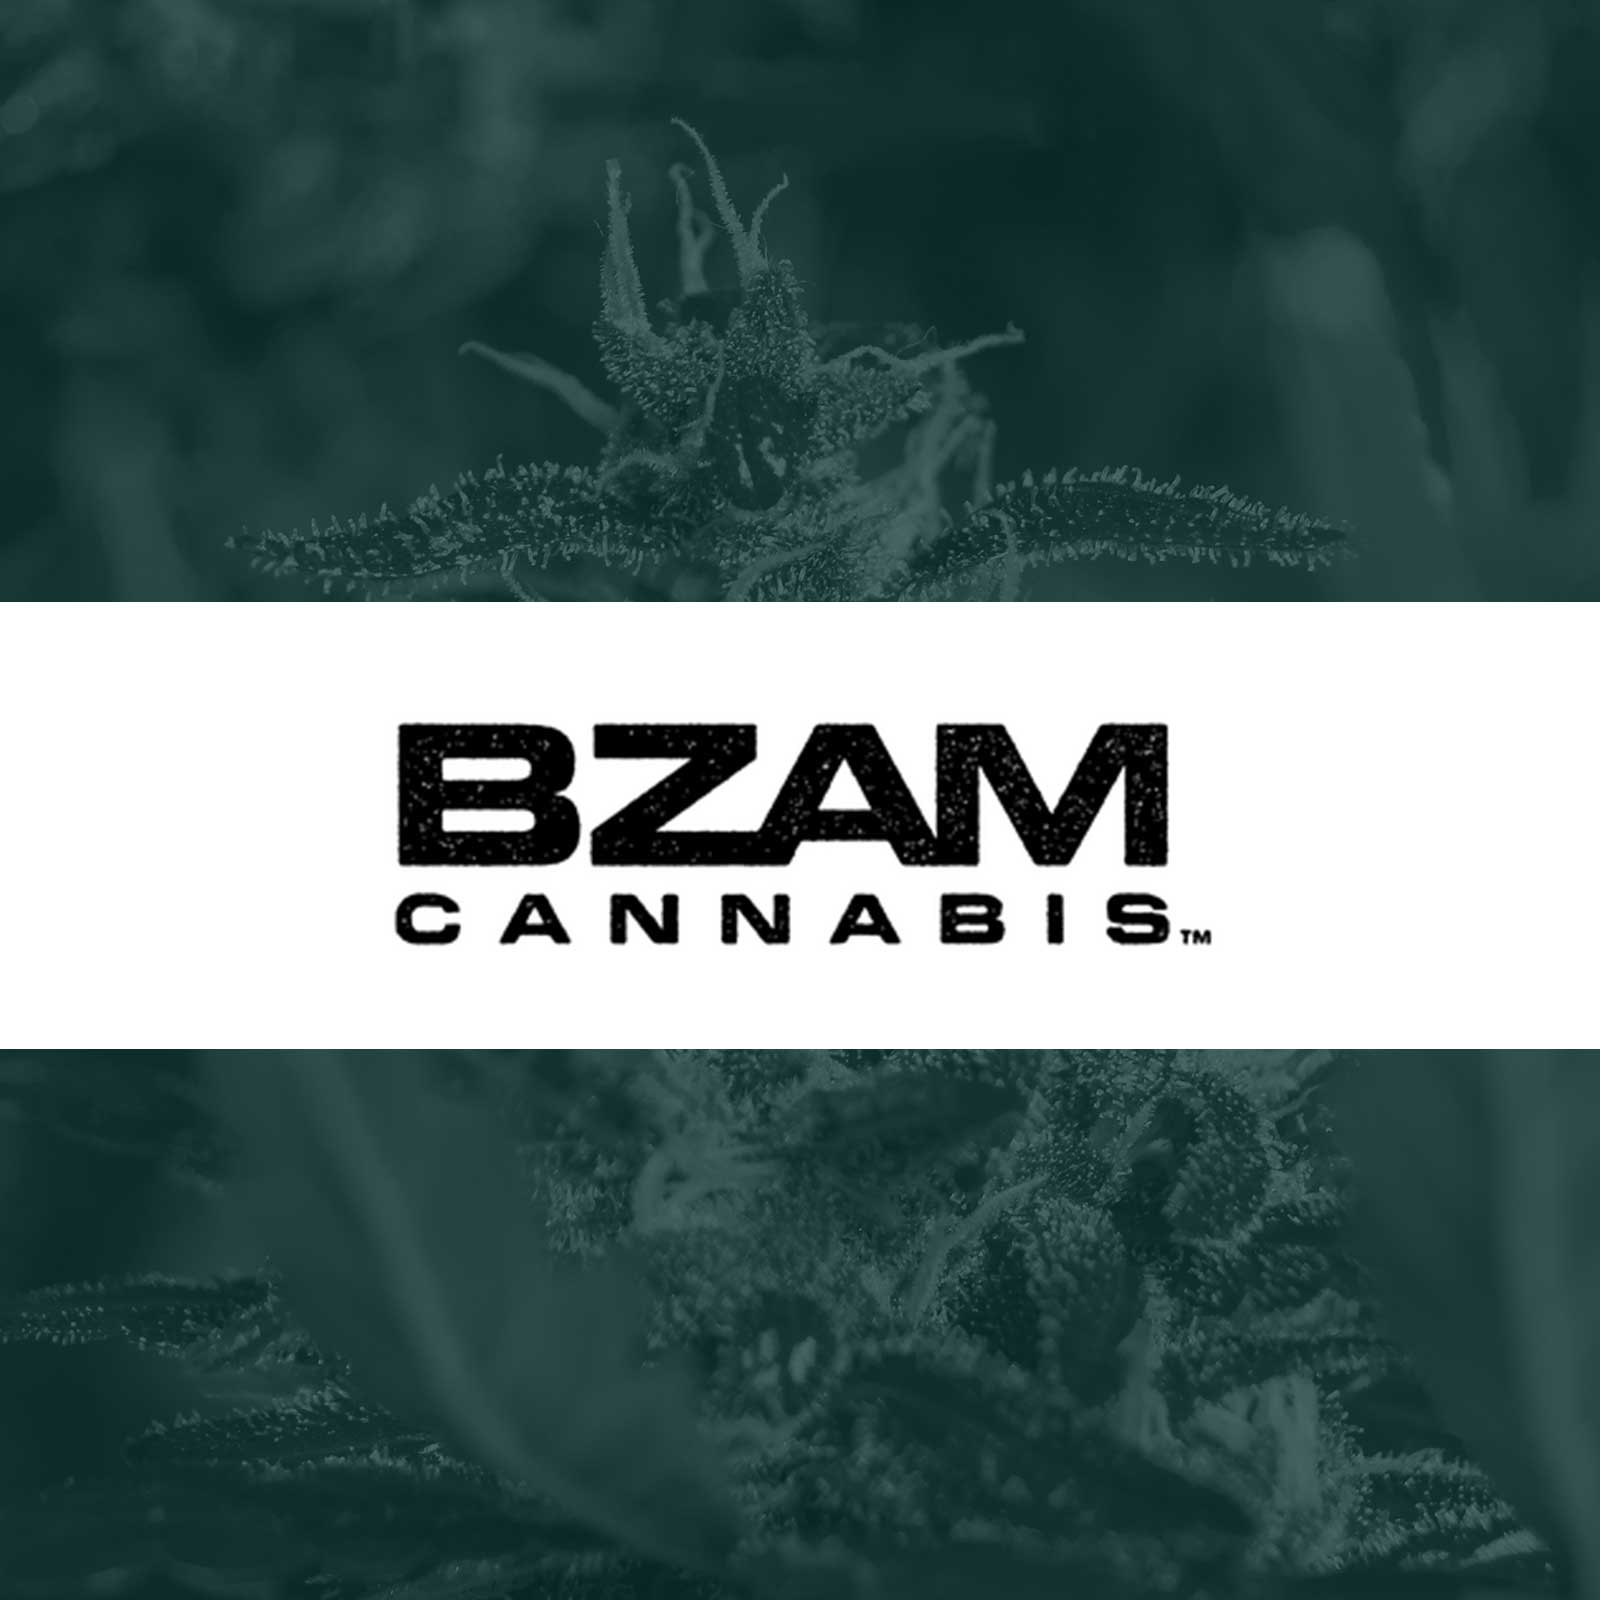 BZAM Cannabis